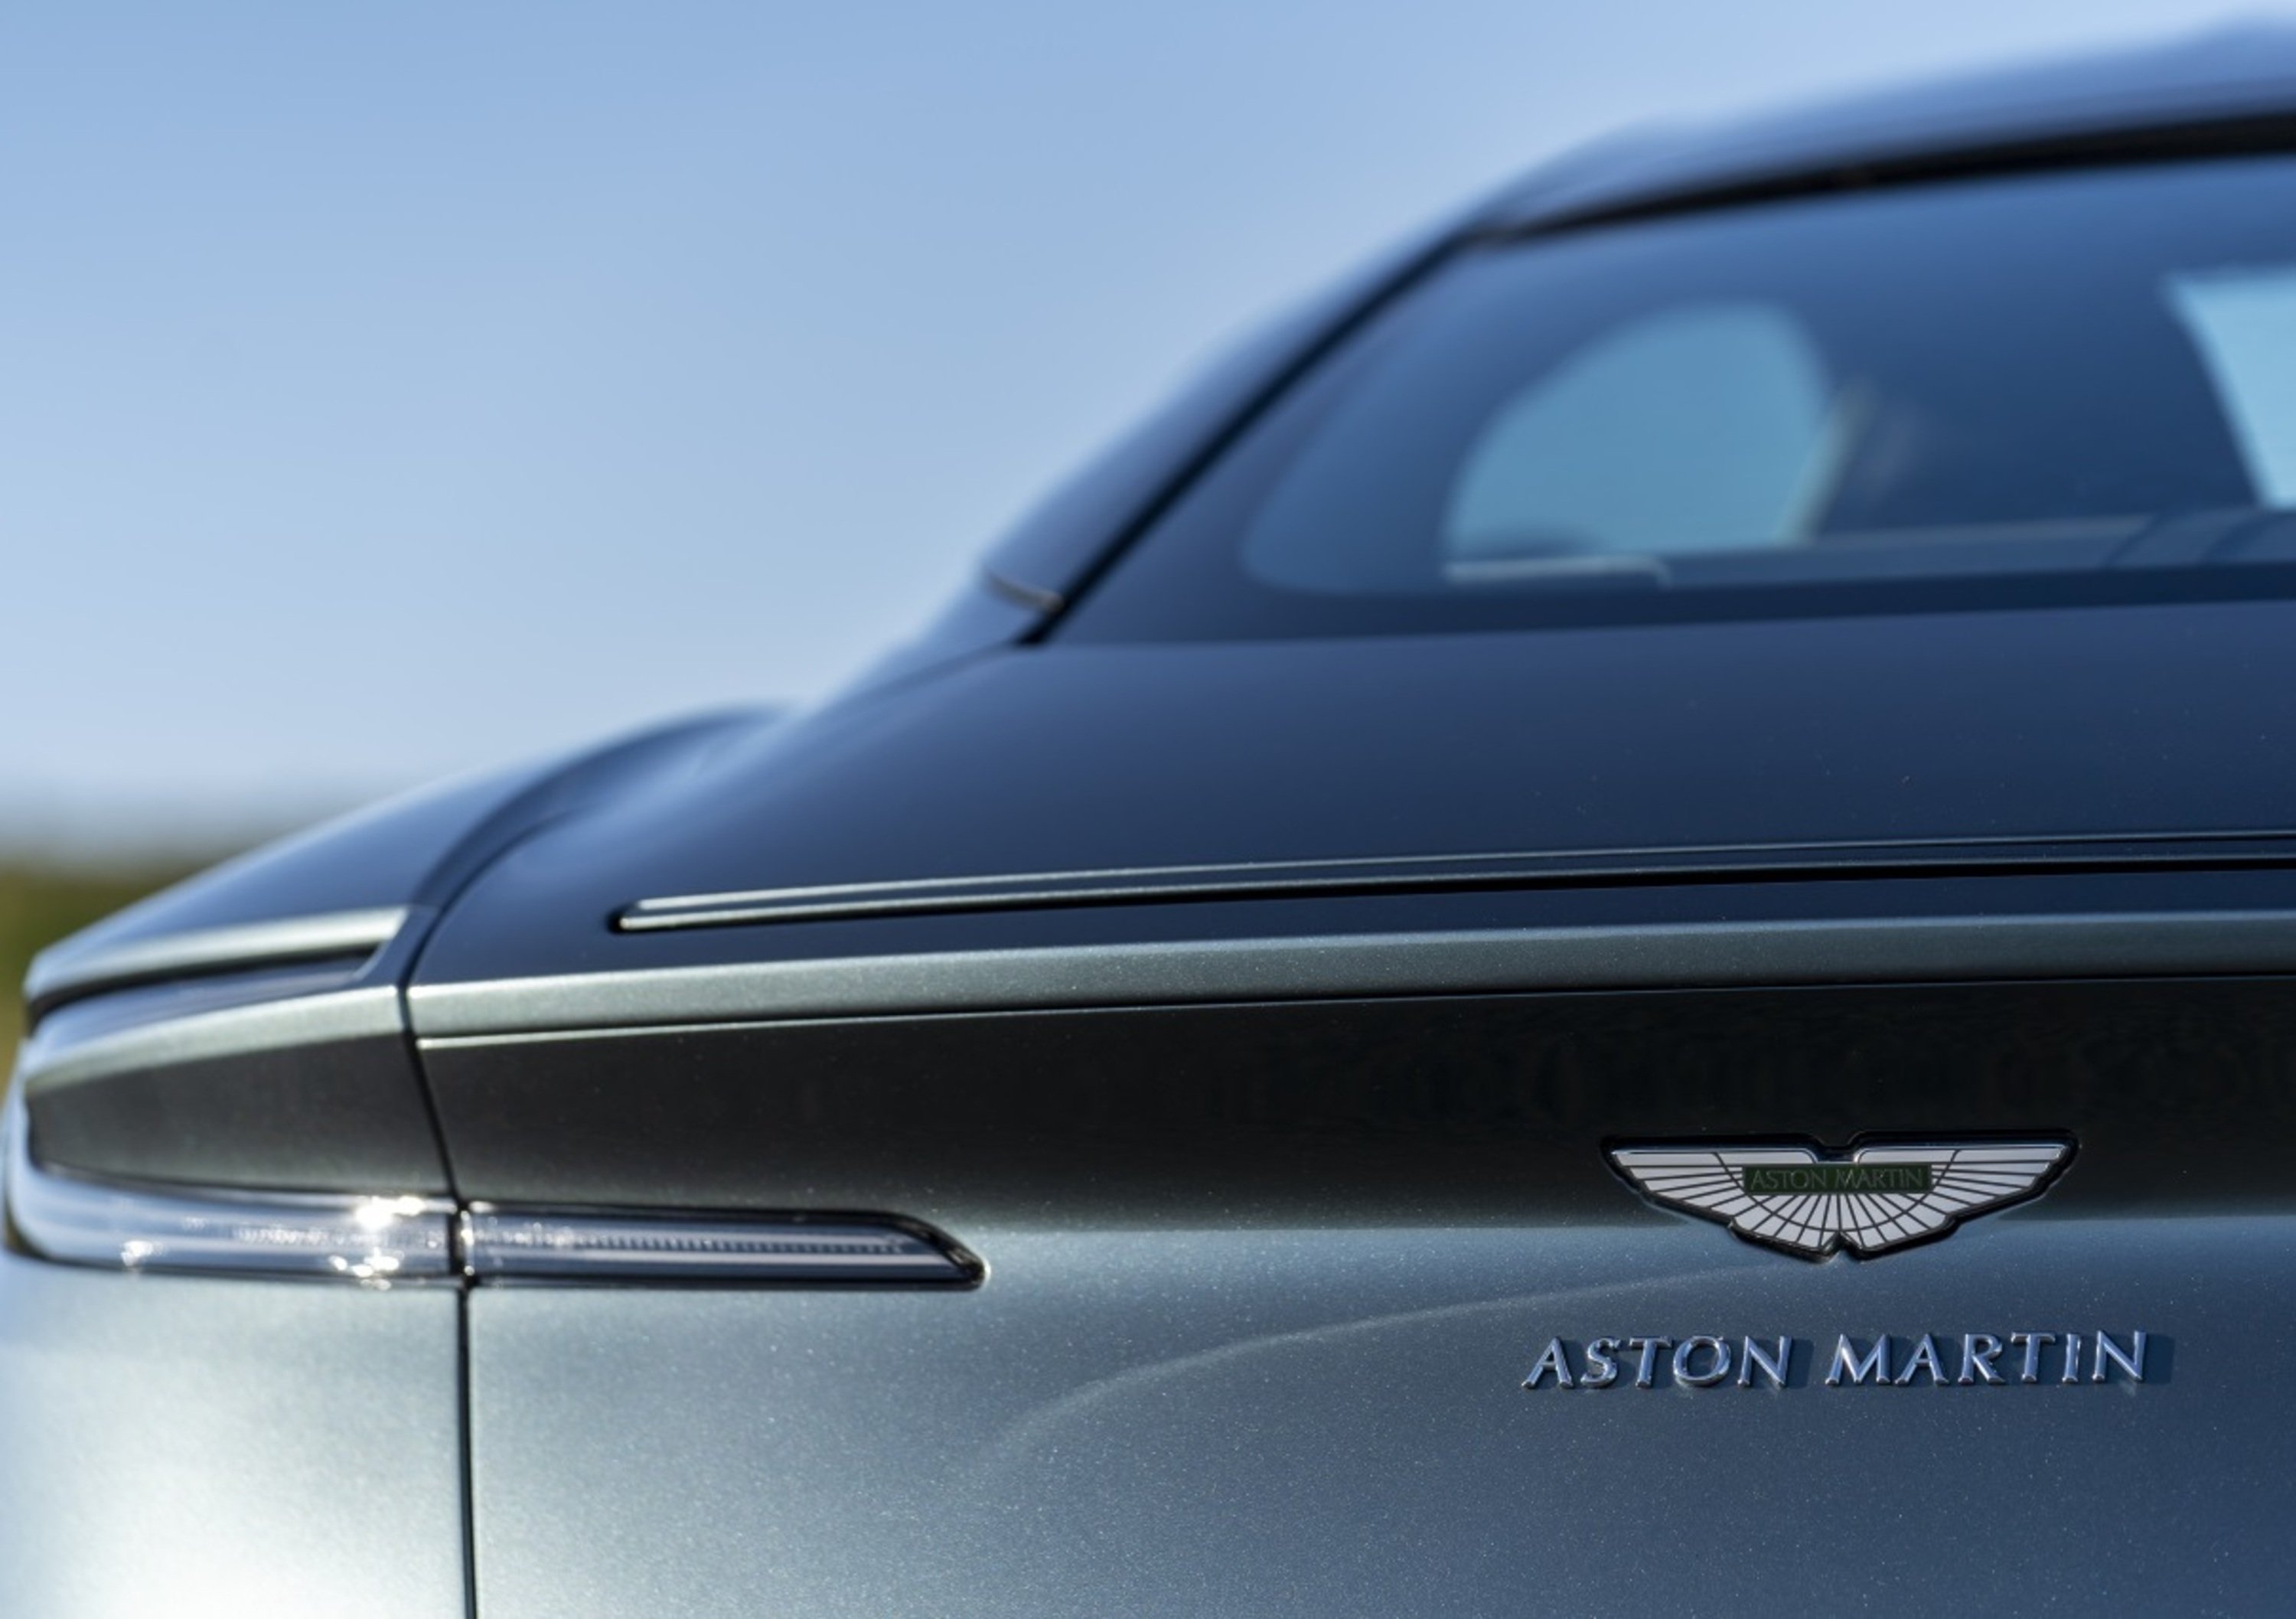 Aston Martin, confermati contatti con investitori